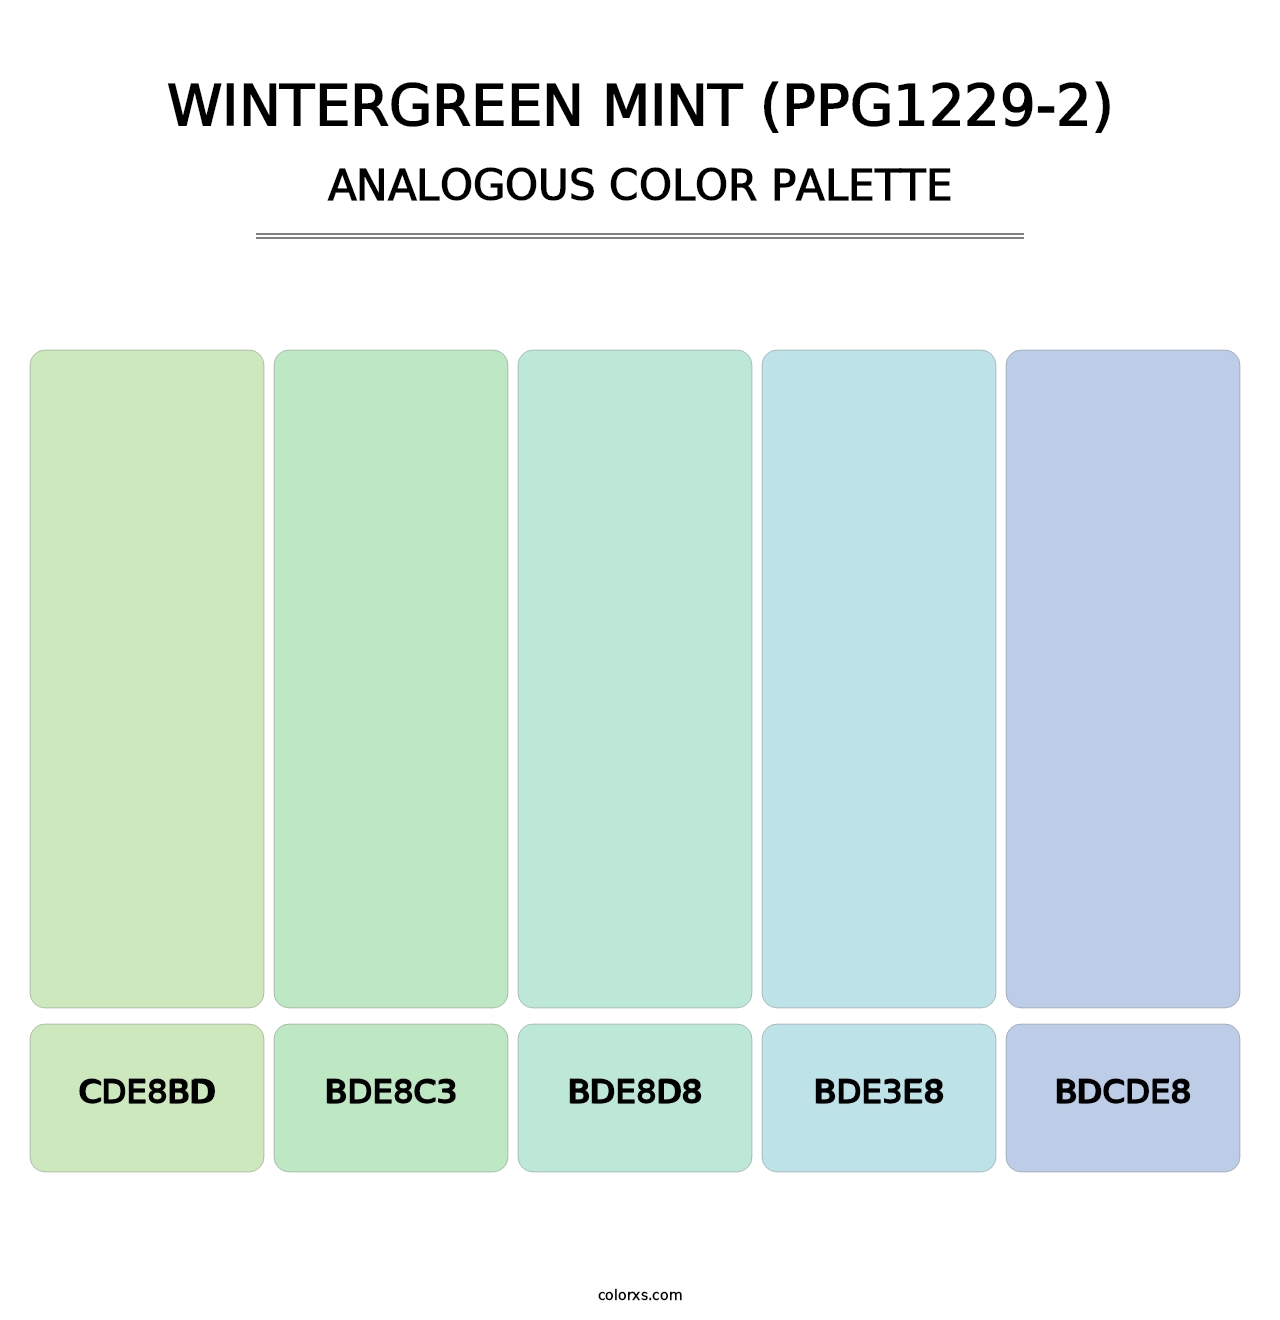 Wintergreen Mint (PPG1229-2) - Analogous Color Palette